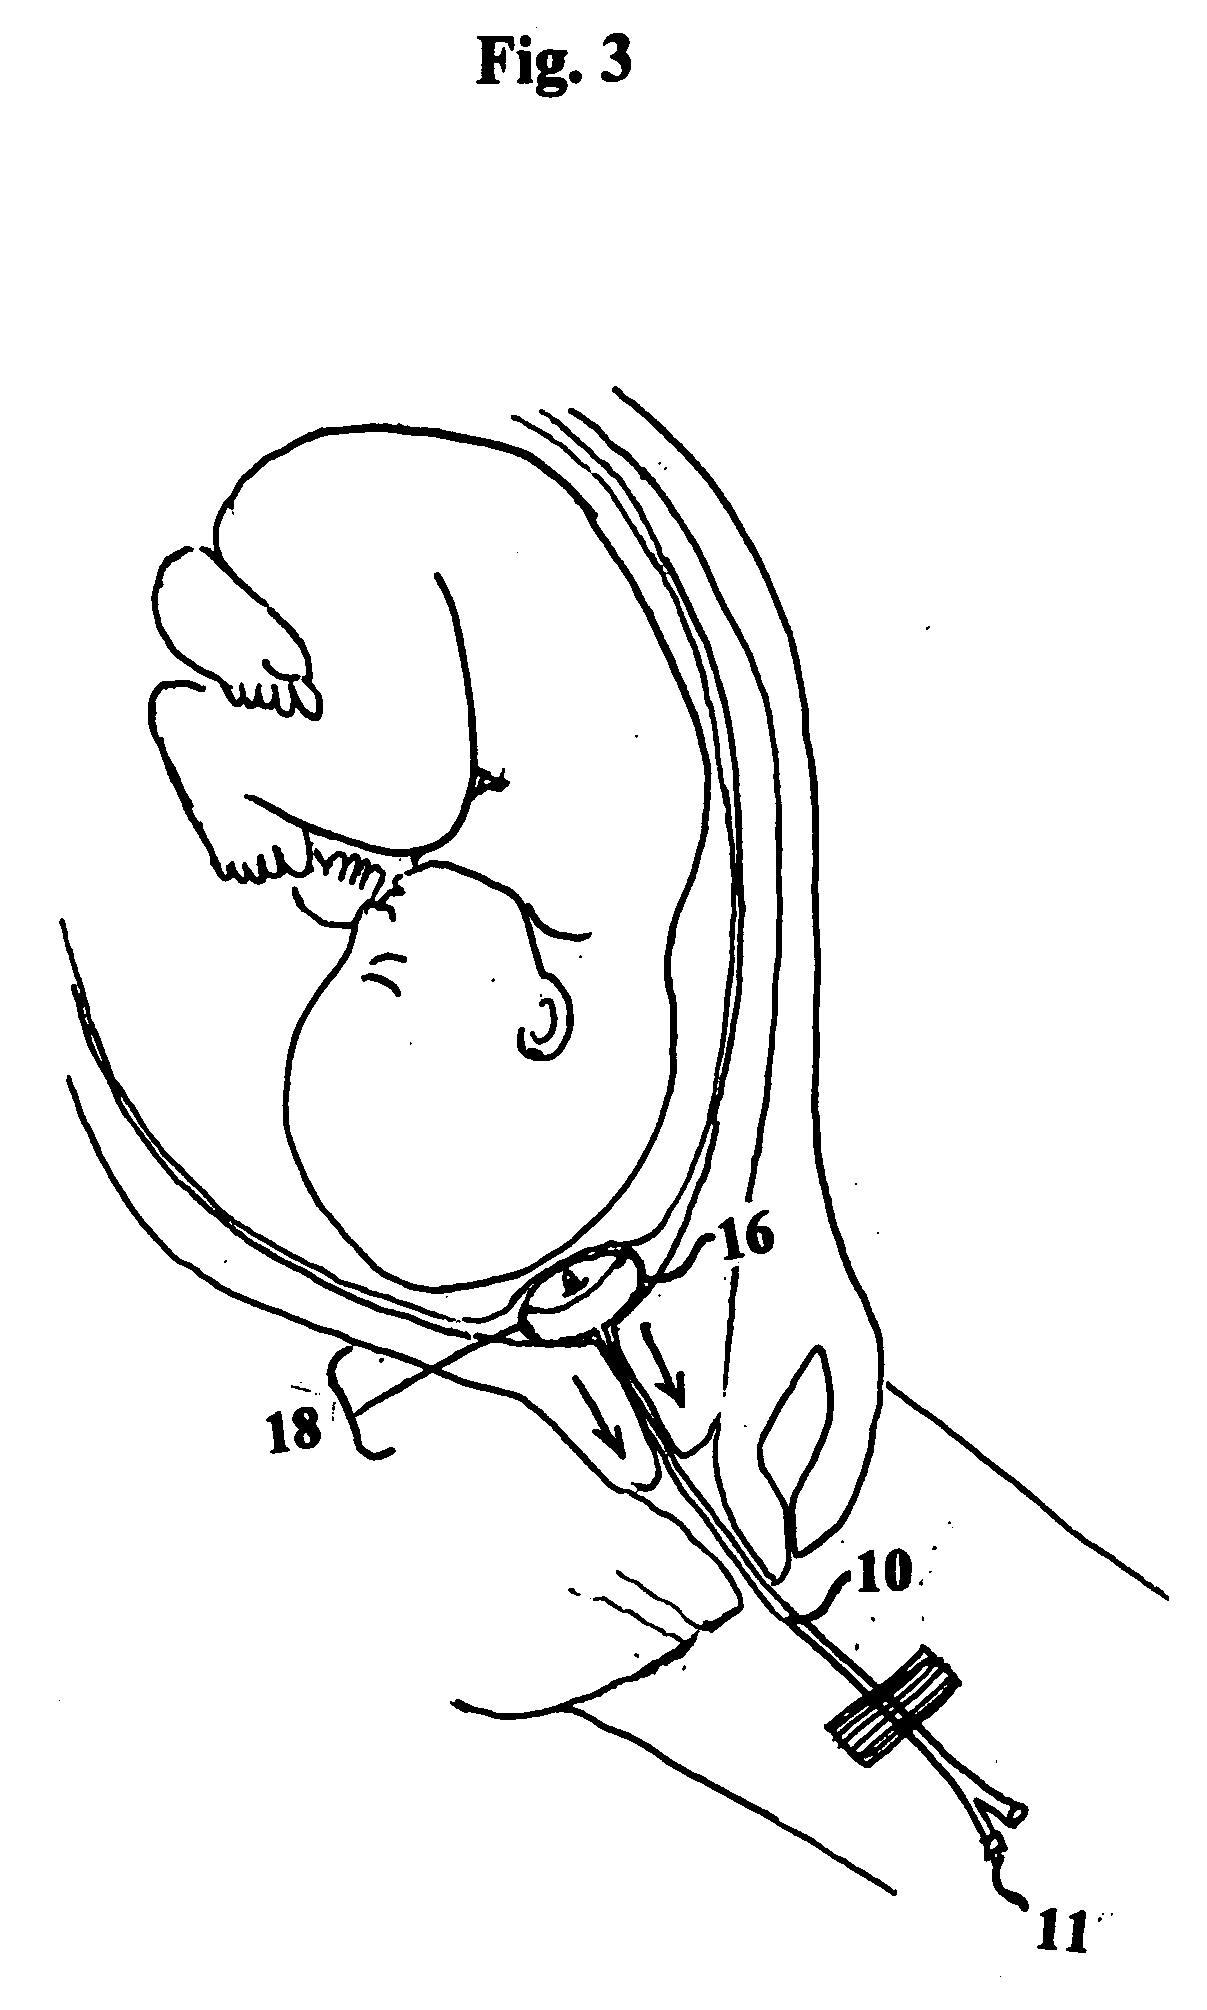 Cervical dilator catheter